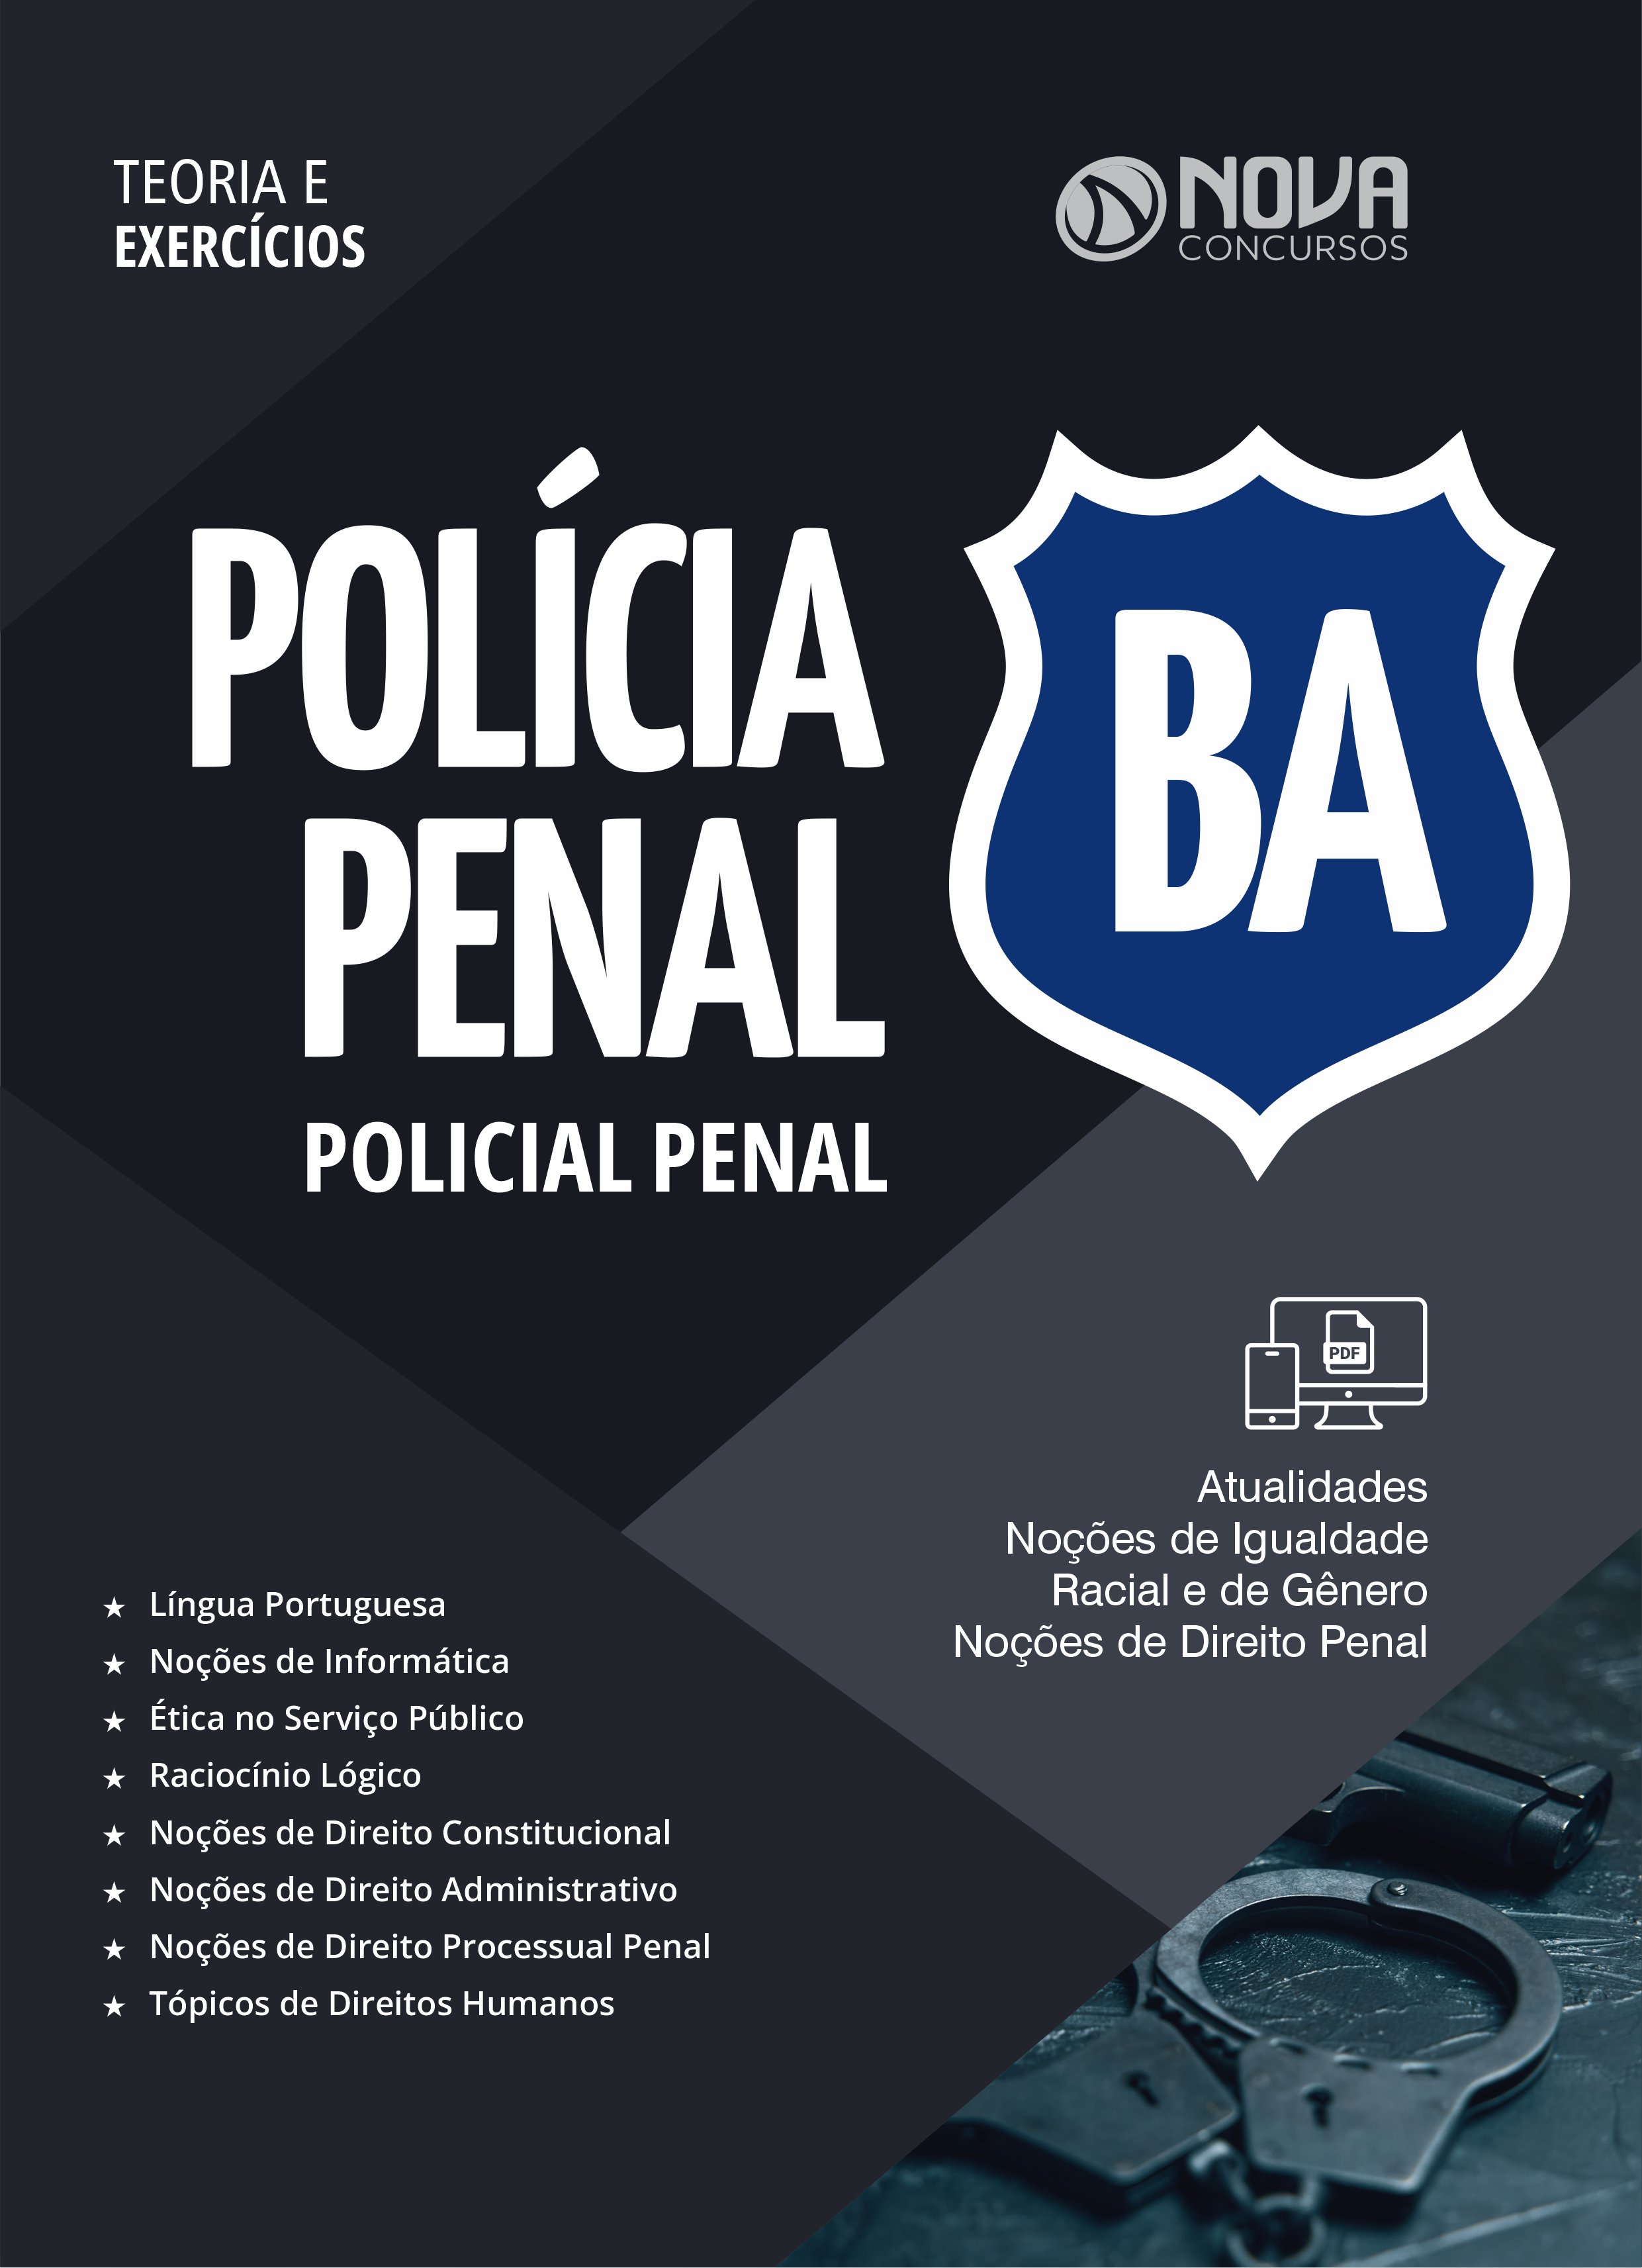 Concurso Policia Penal da Bahia - Direito Penal 